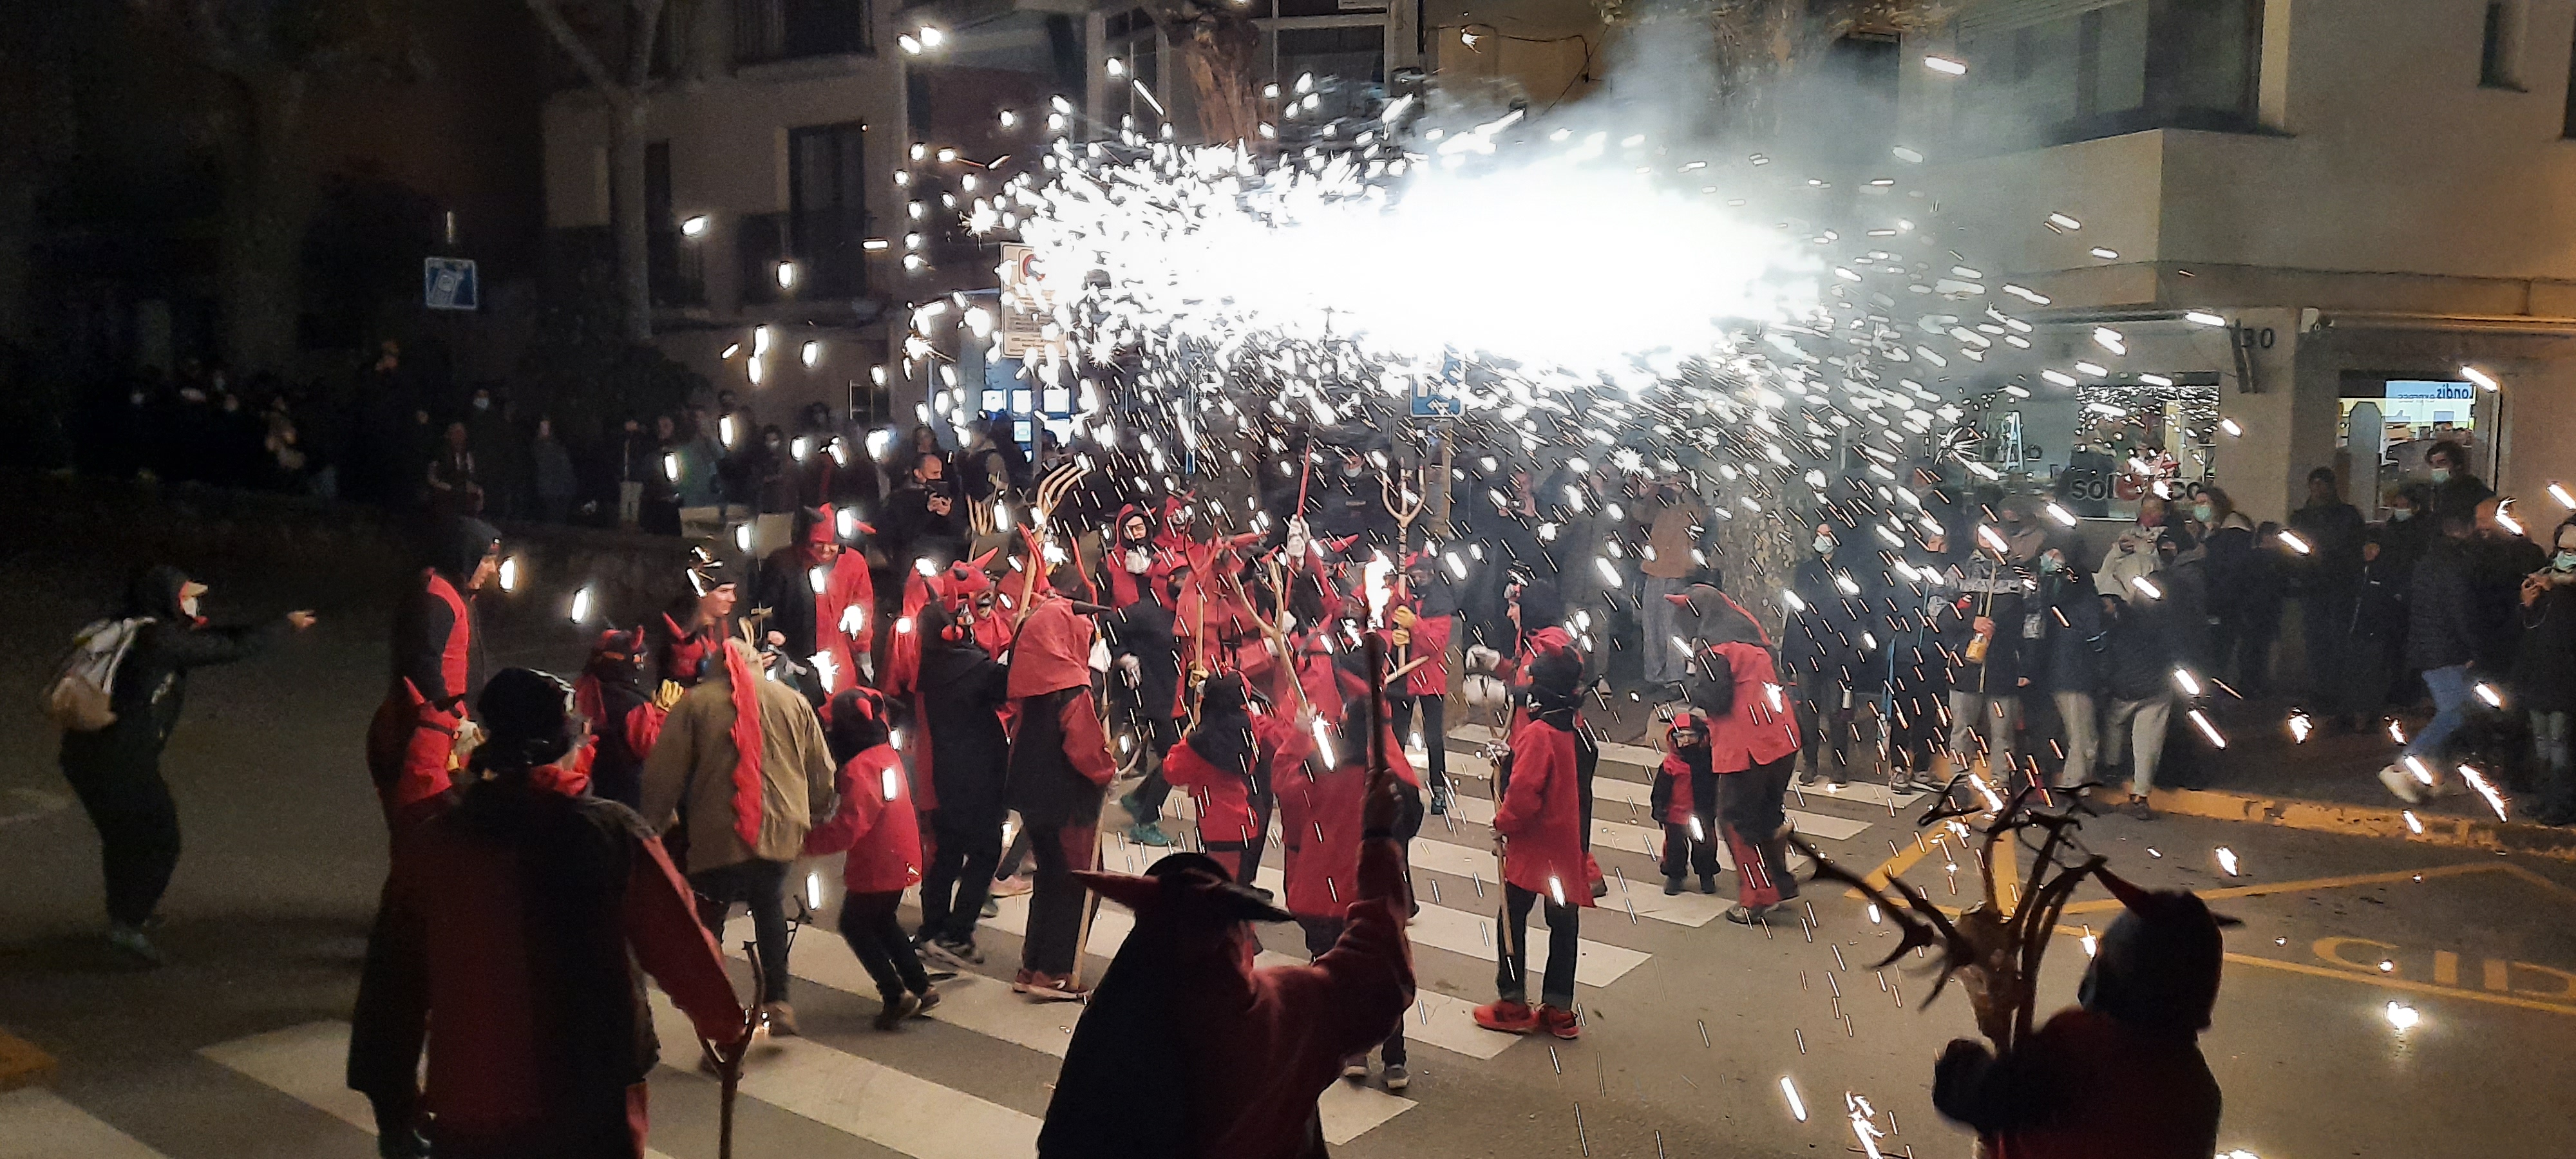 Festa Major de Santa Llúcia i Nadal 2021 - Foto 22113093